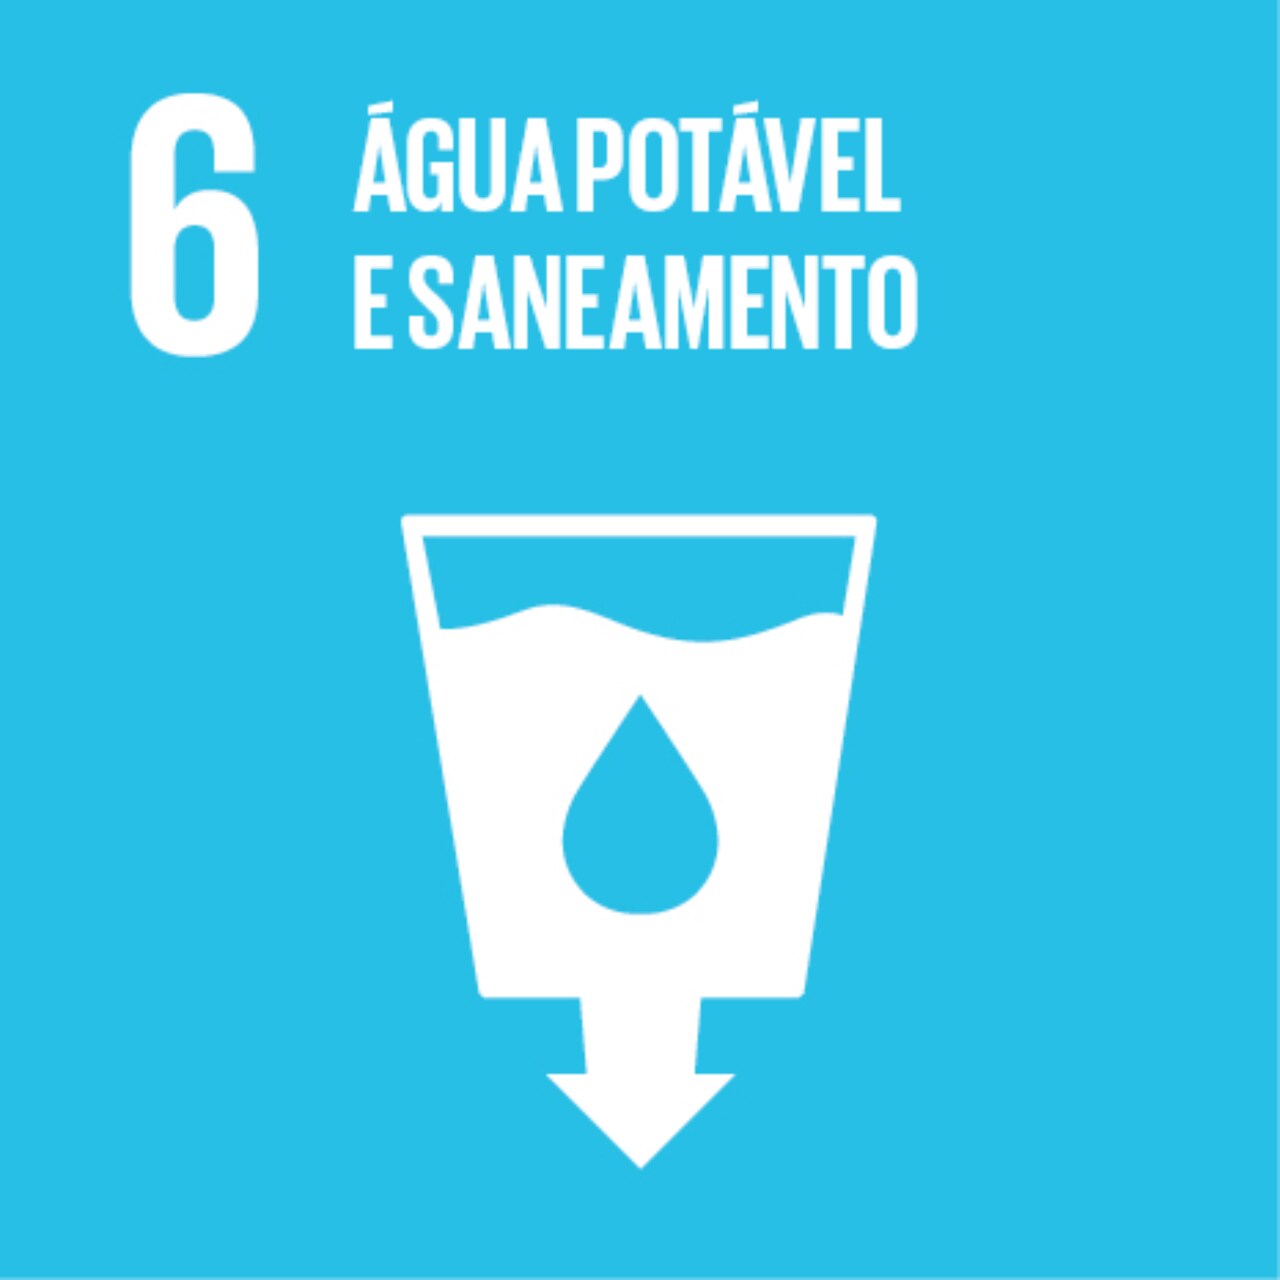 Imagem que representa o ODS número Seis – Água potável e saneamento, com fundo azul o ícone de um copo cheio com a figura de uma gota dentro dele e uma seta para baixo no fundo.